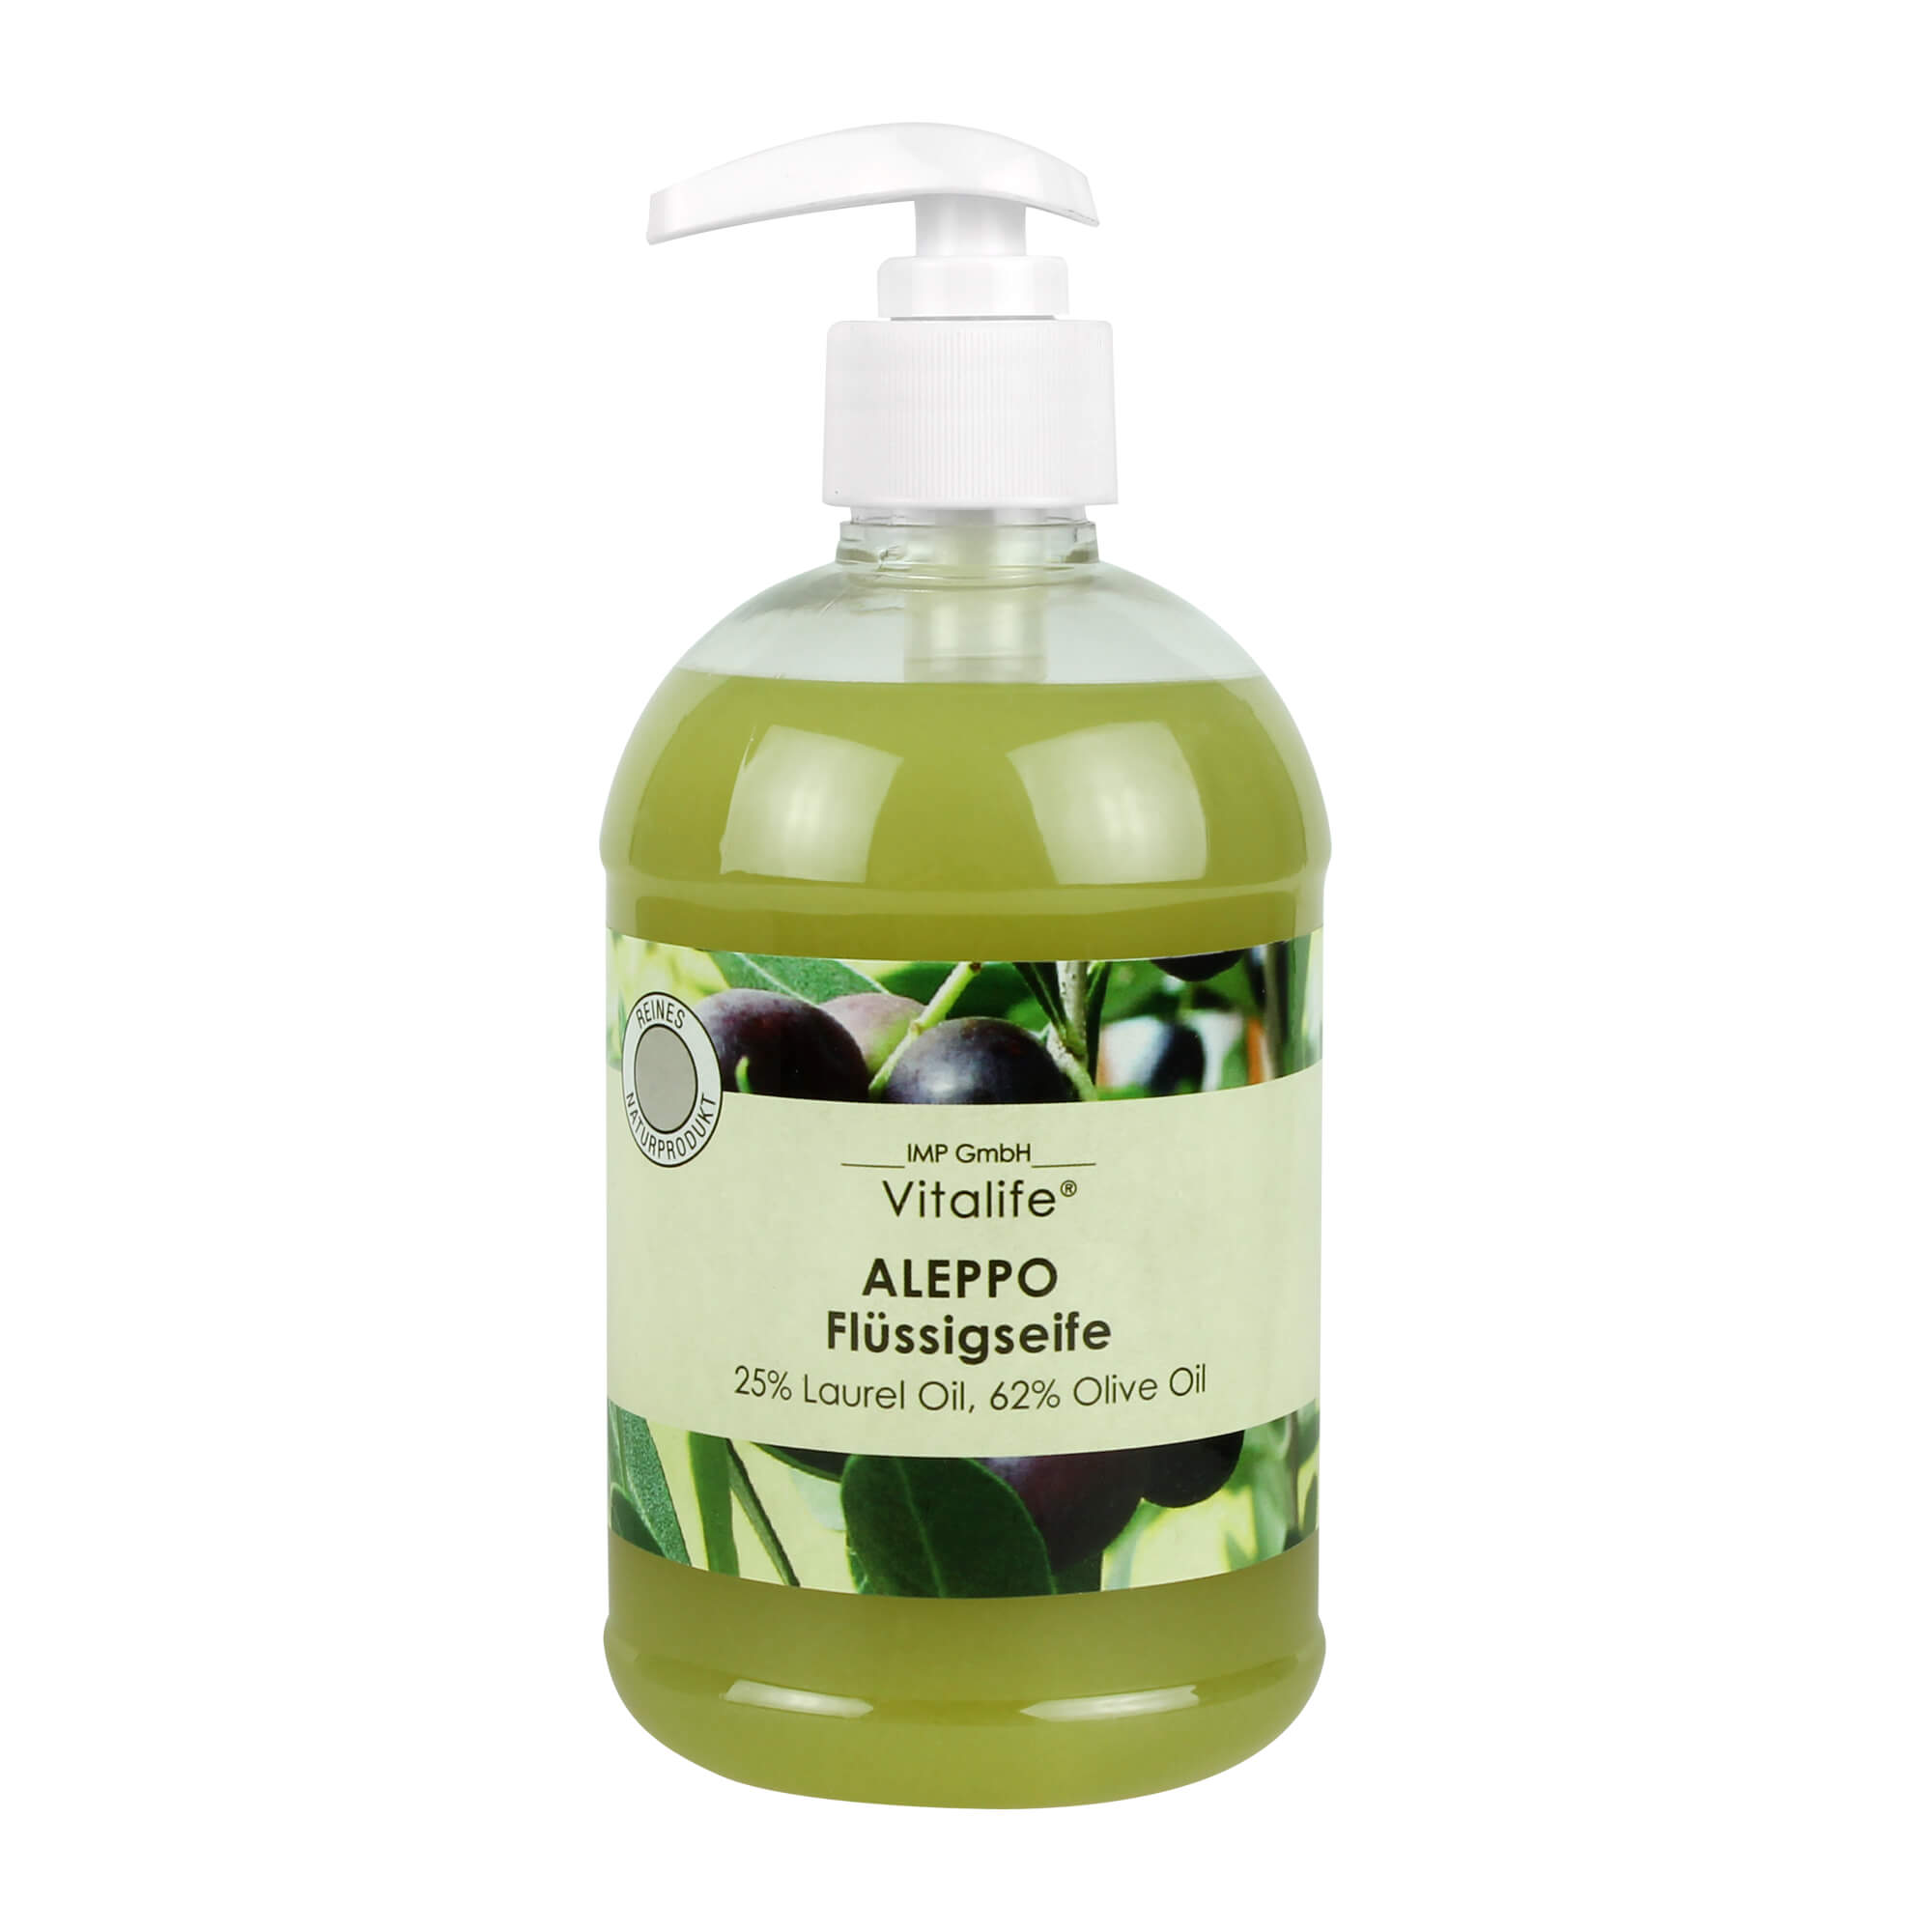 Zur Reinigung uns Pflege von sensibler, trockener, gereizter oder allergiegefährdete Haut. Auch zur Haarpflege geeignet.